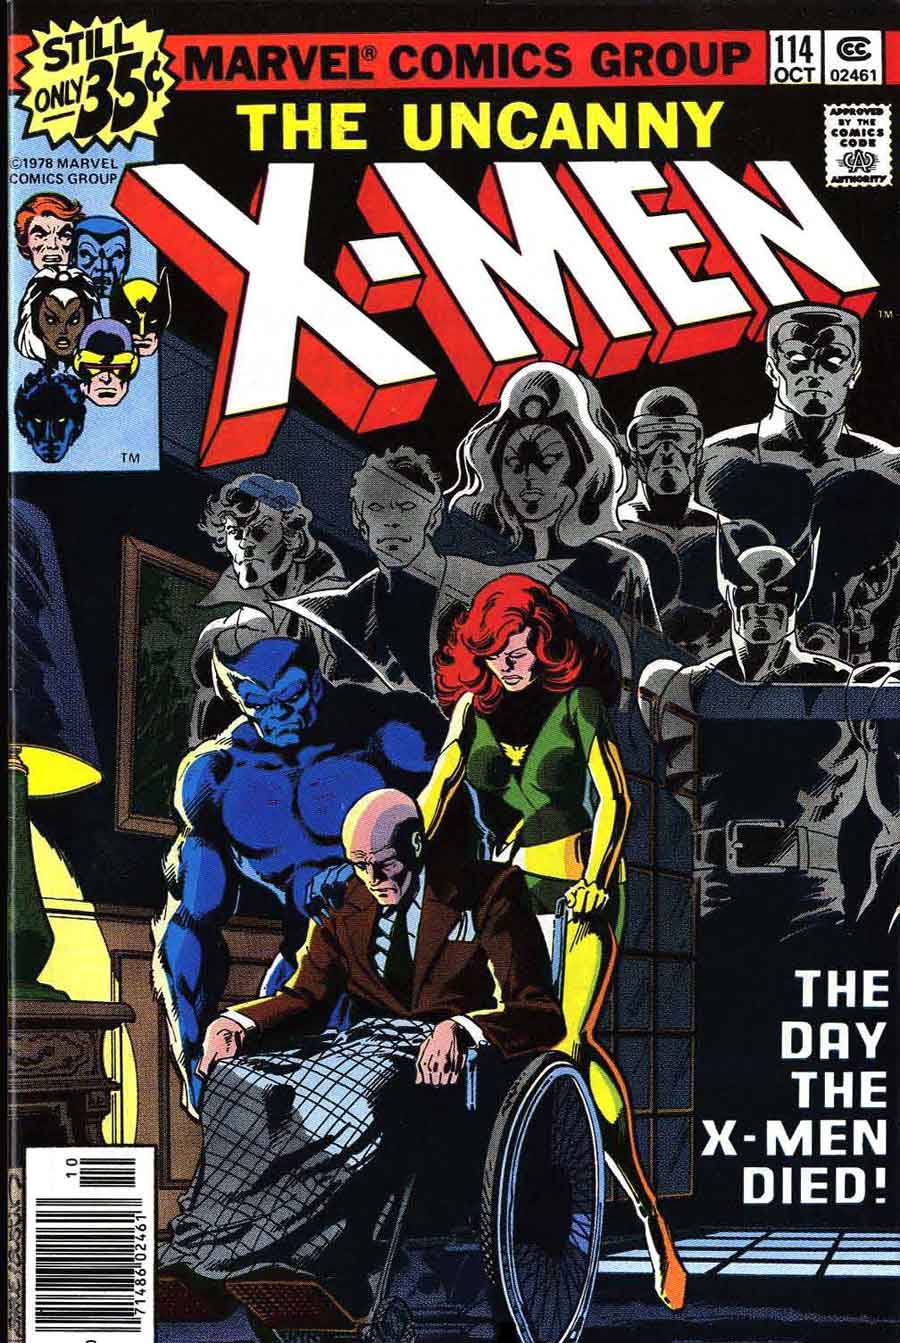 X-men v1 #114 marvel bronze age 1970s comic book cover art by John Byrne